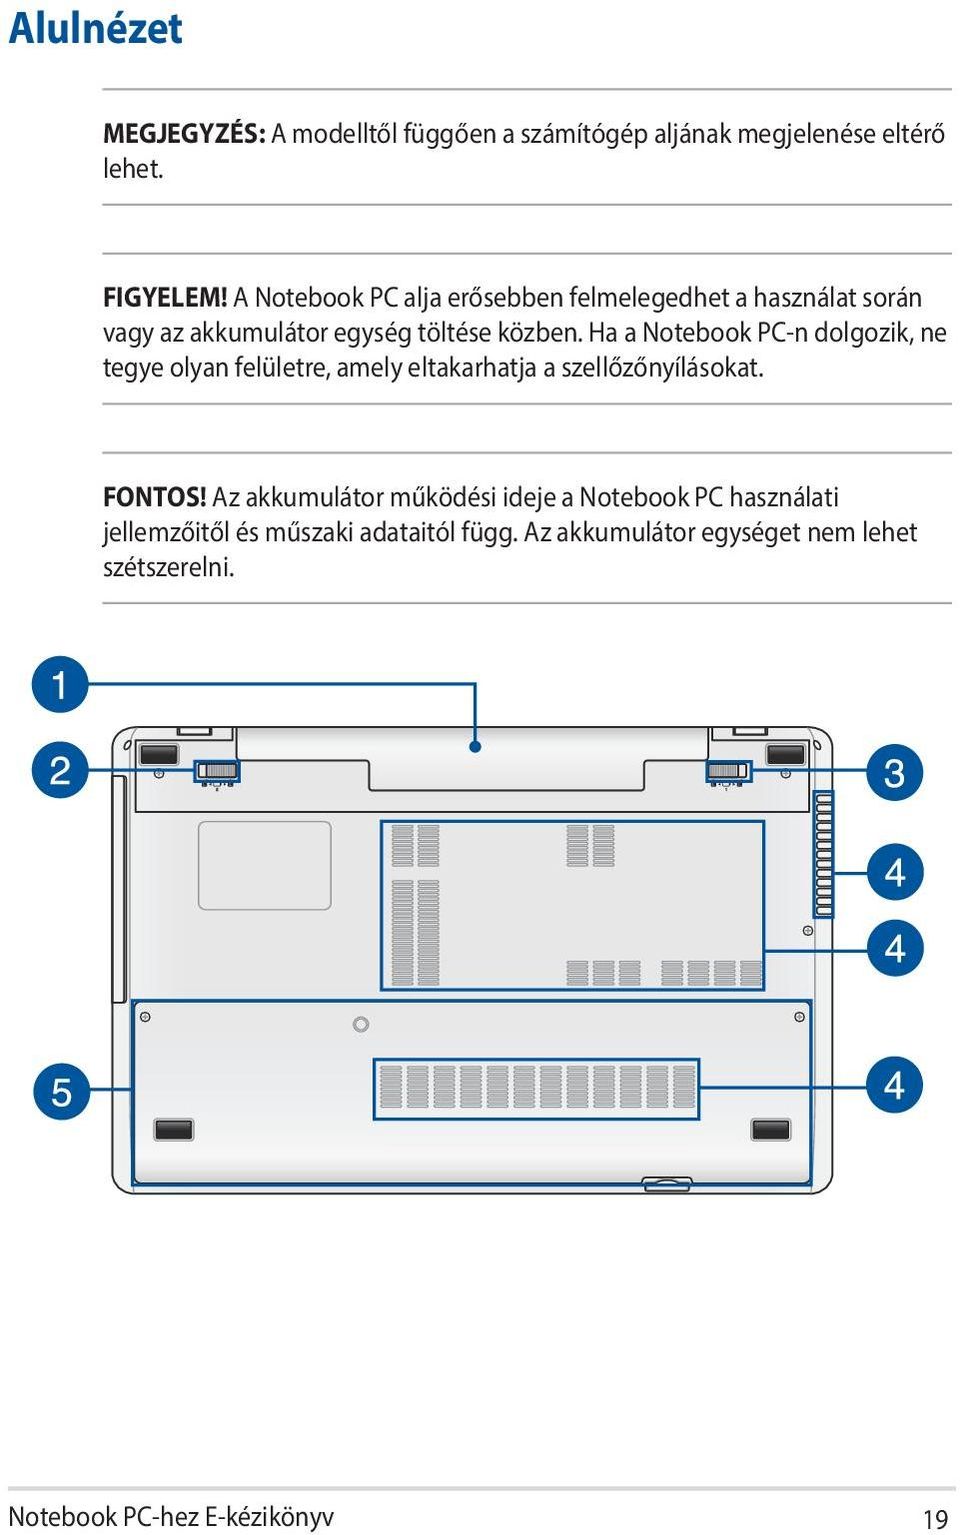 Ha a Notebook PC-n dolgozik, ne tegye olyan felületre, amely eltakarhatja a szellőzőnyílásokat. FONTOS!